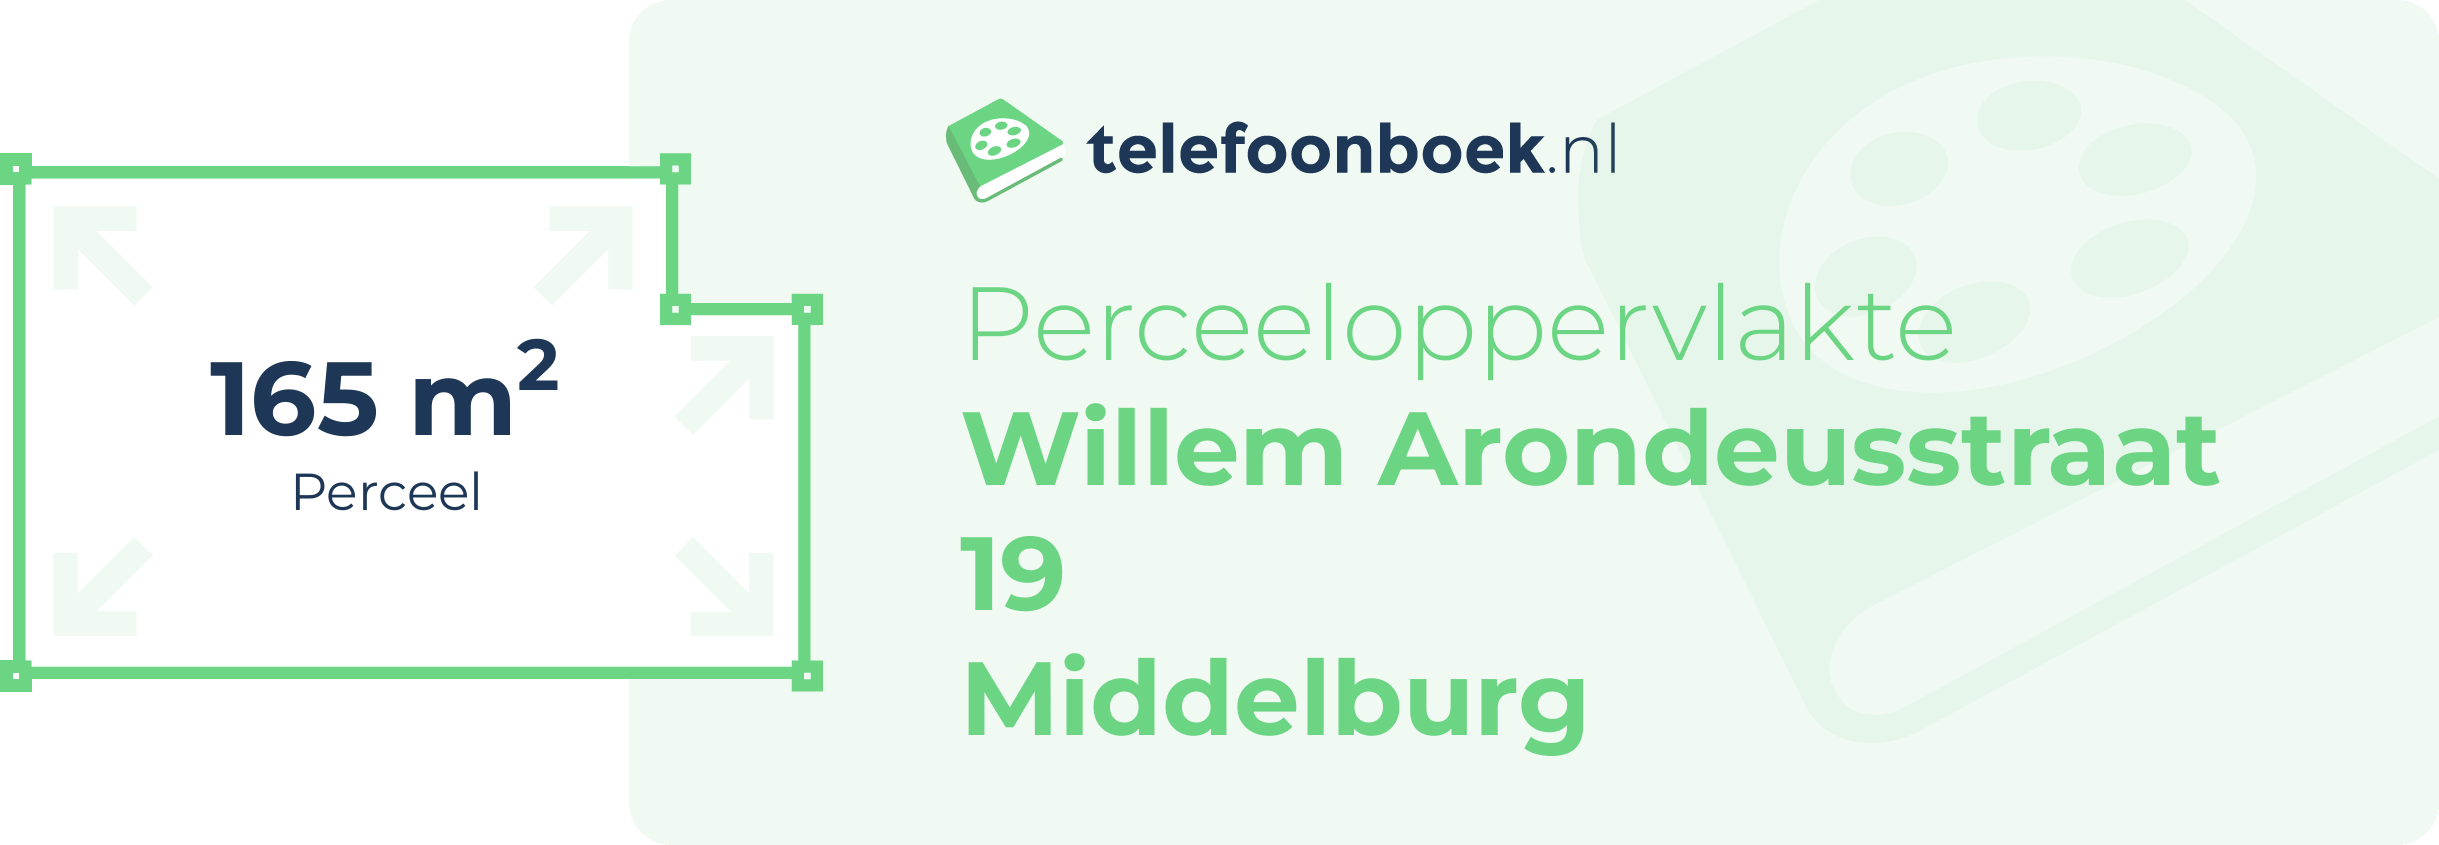 Perceeloppervlakte Willem Arondeusstraat 19 Middelburg